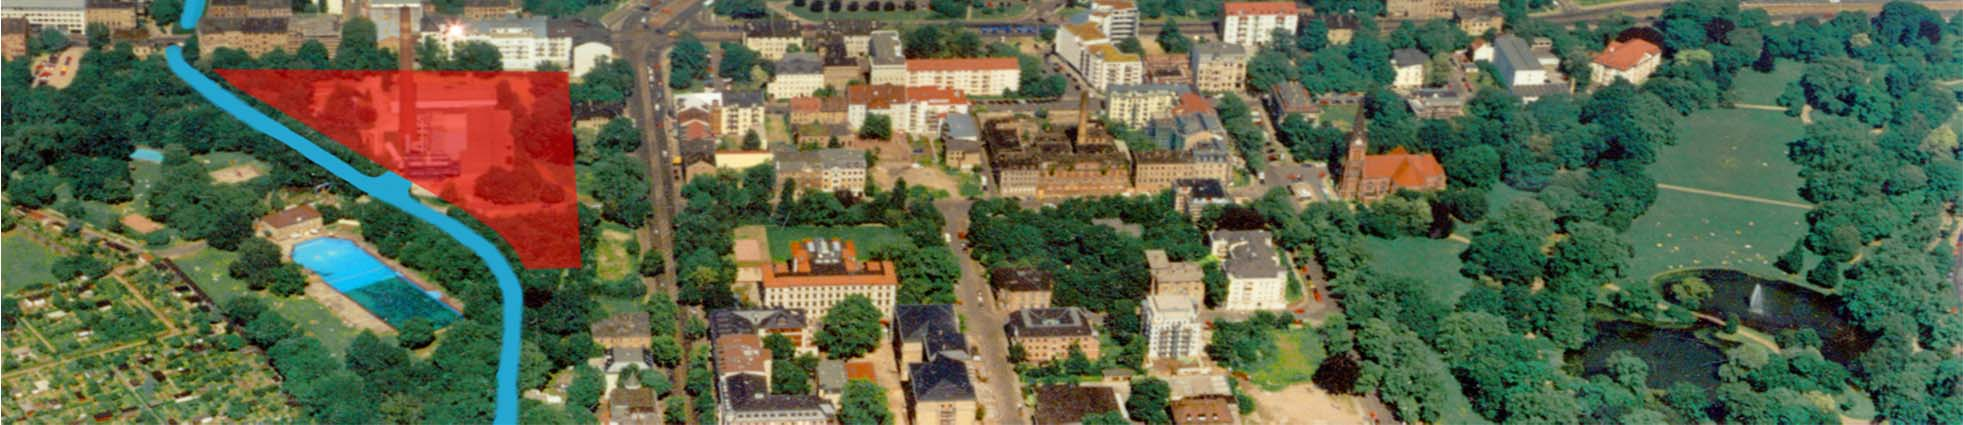 Stadthafen Leipzig Startpunkt für sieben Kurse Lage zur